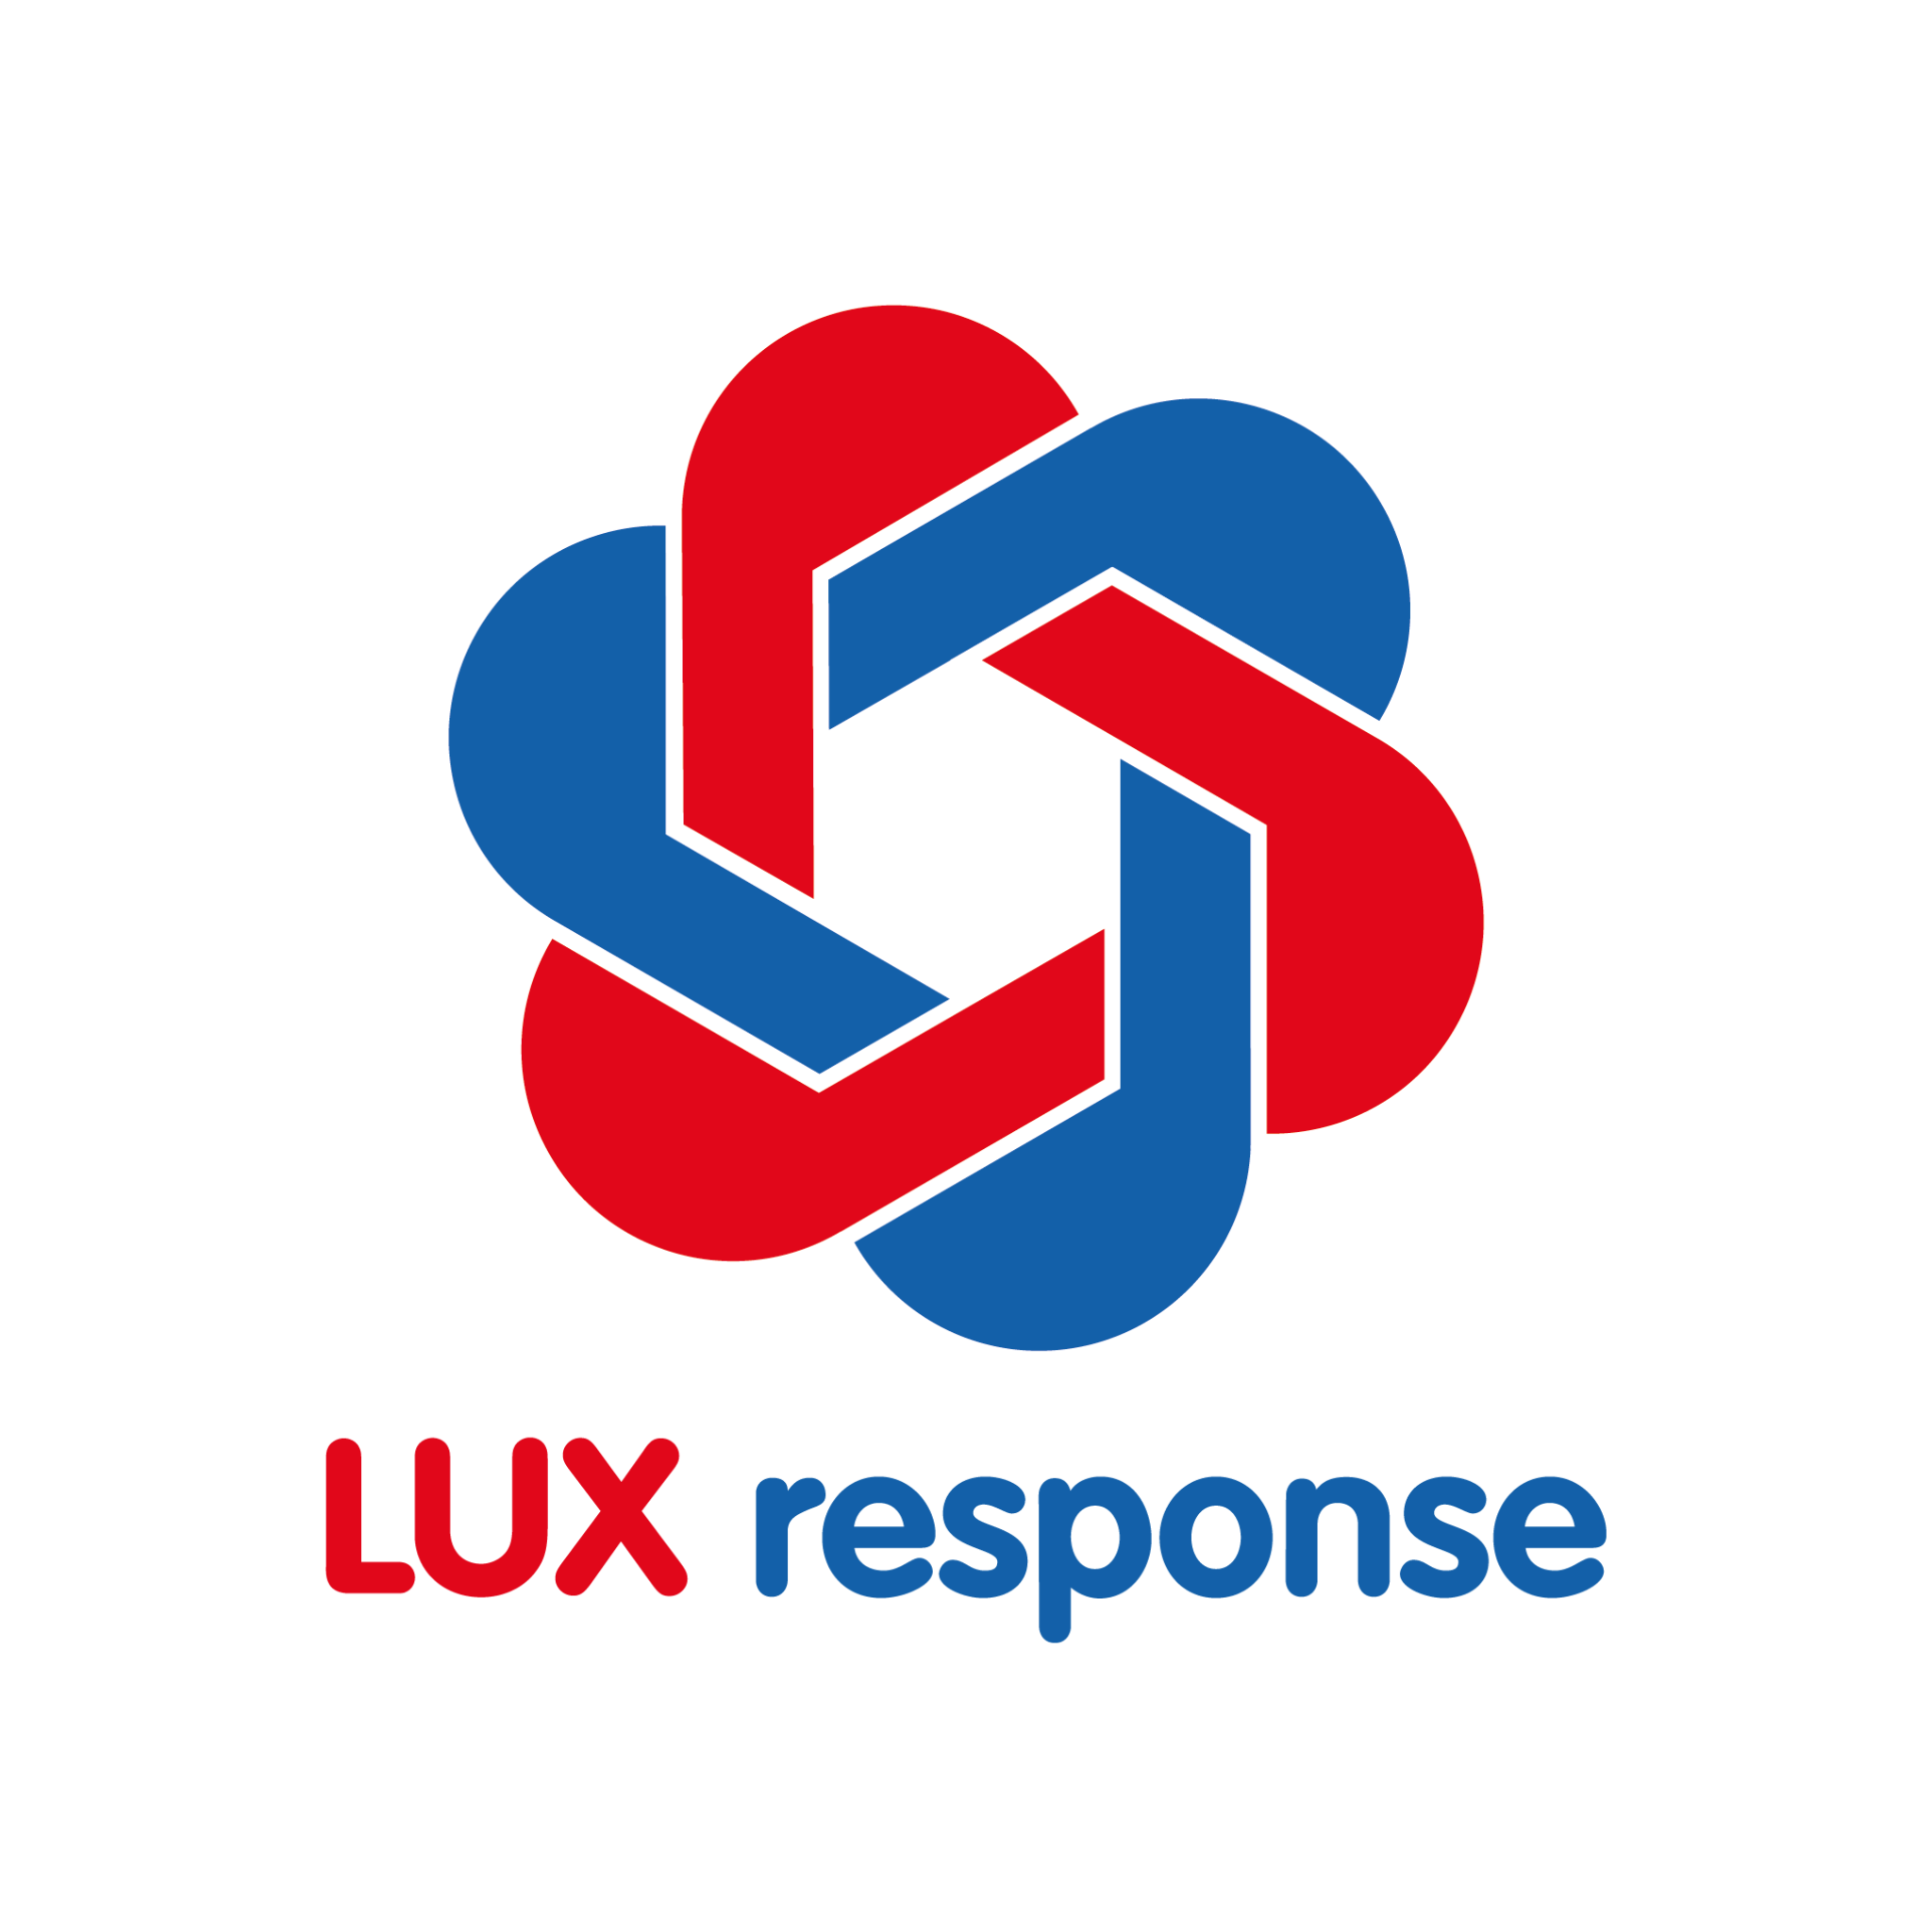 Lancering van LUX response